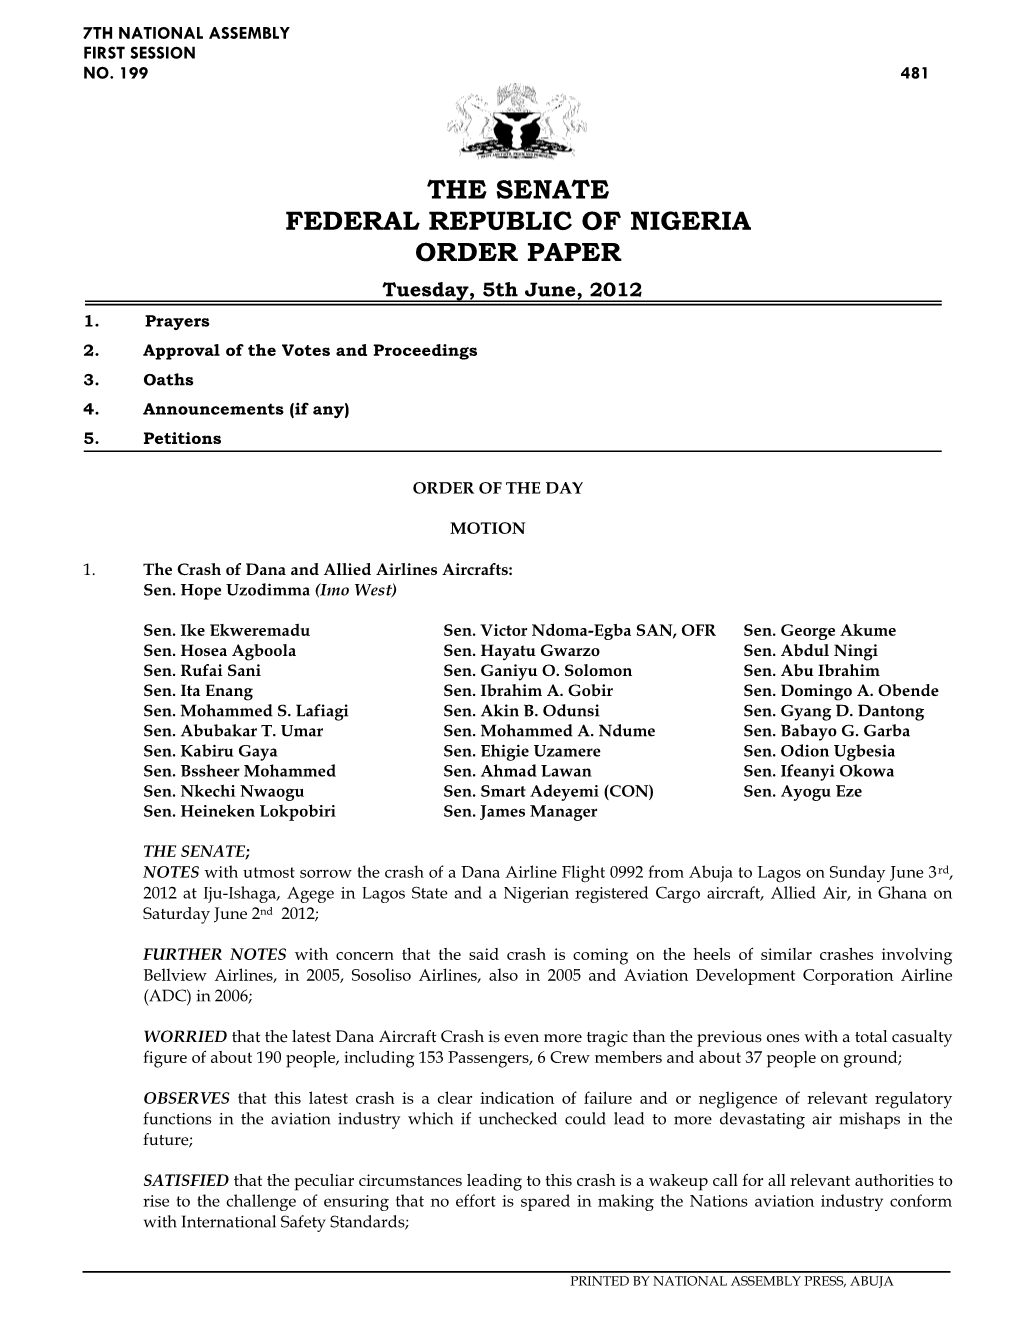 The Senate Federal Republic of Nigeria Order Paper